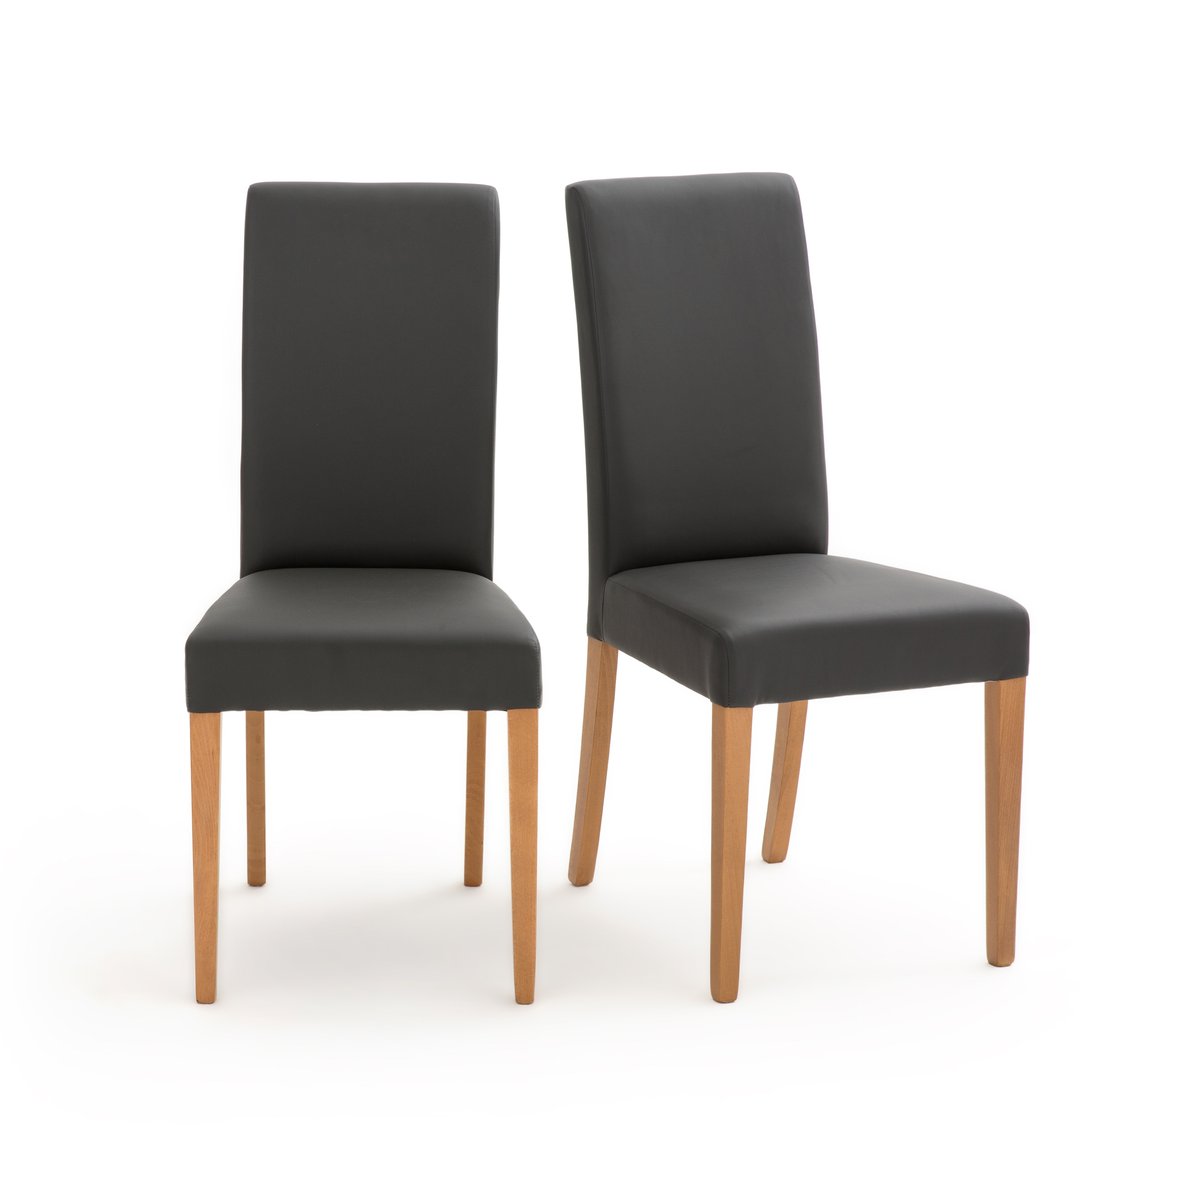 Комплект из 2 стульев Kuri La Redoute единый размер серый